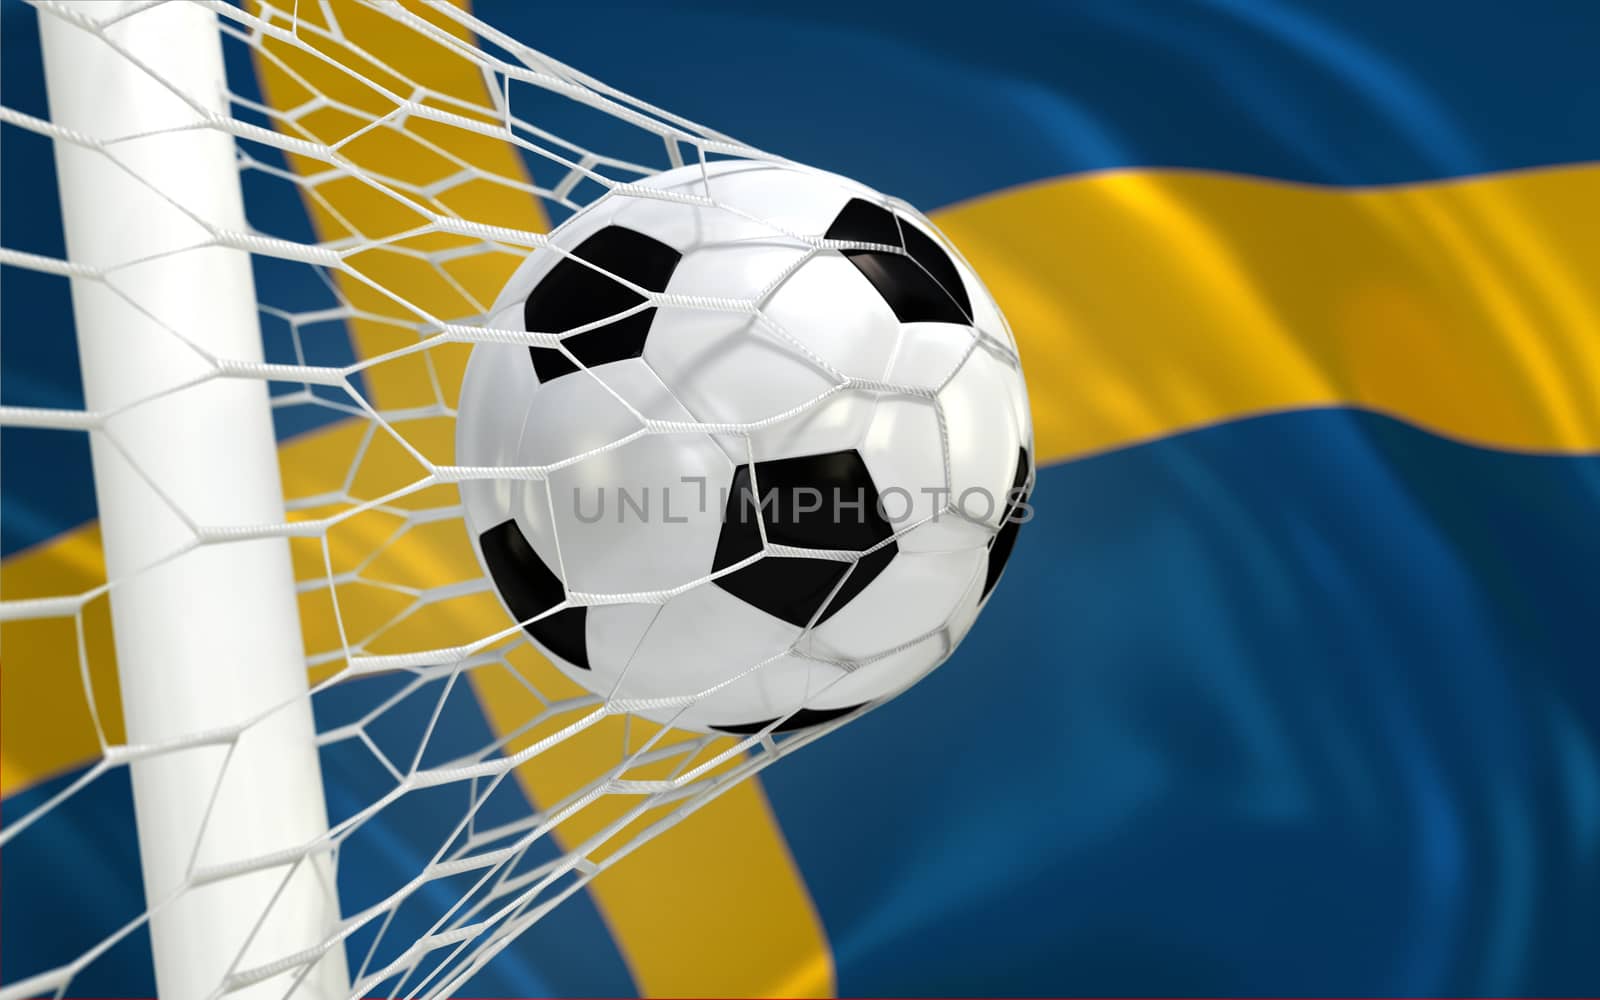 Sweden waving flag and soccer ball in goal net by Barbraford